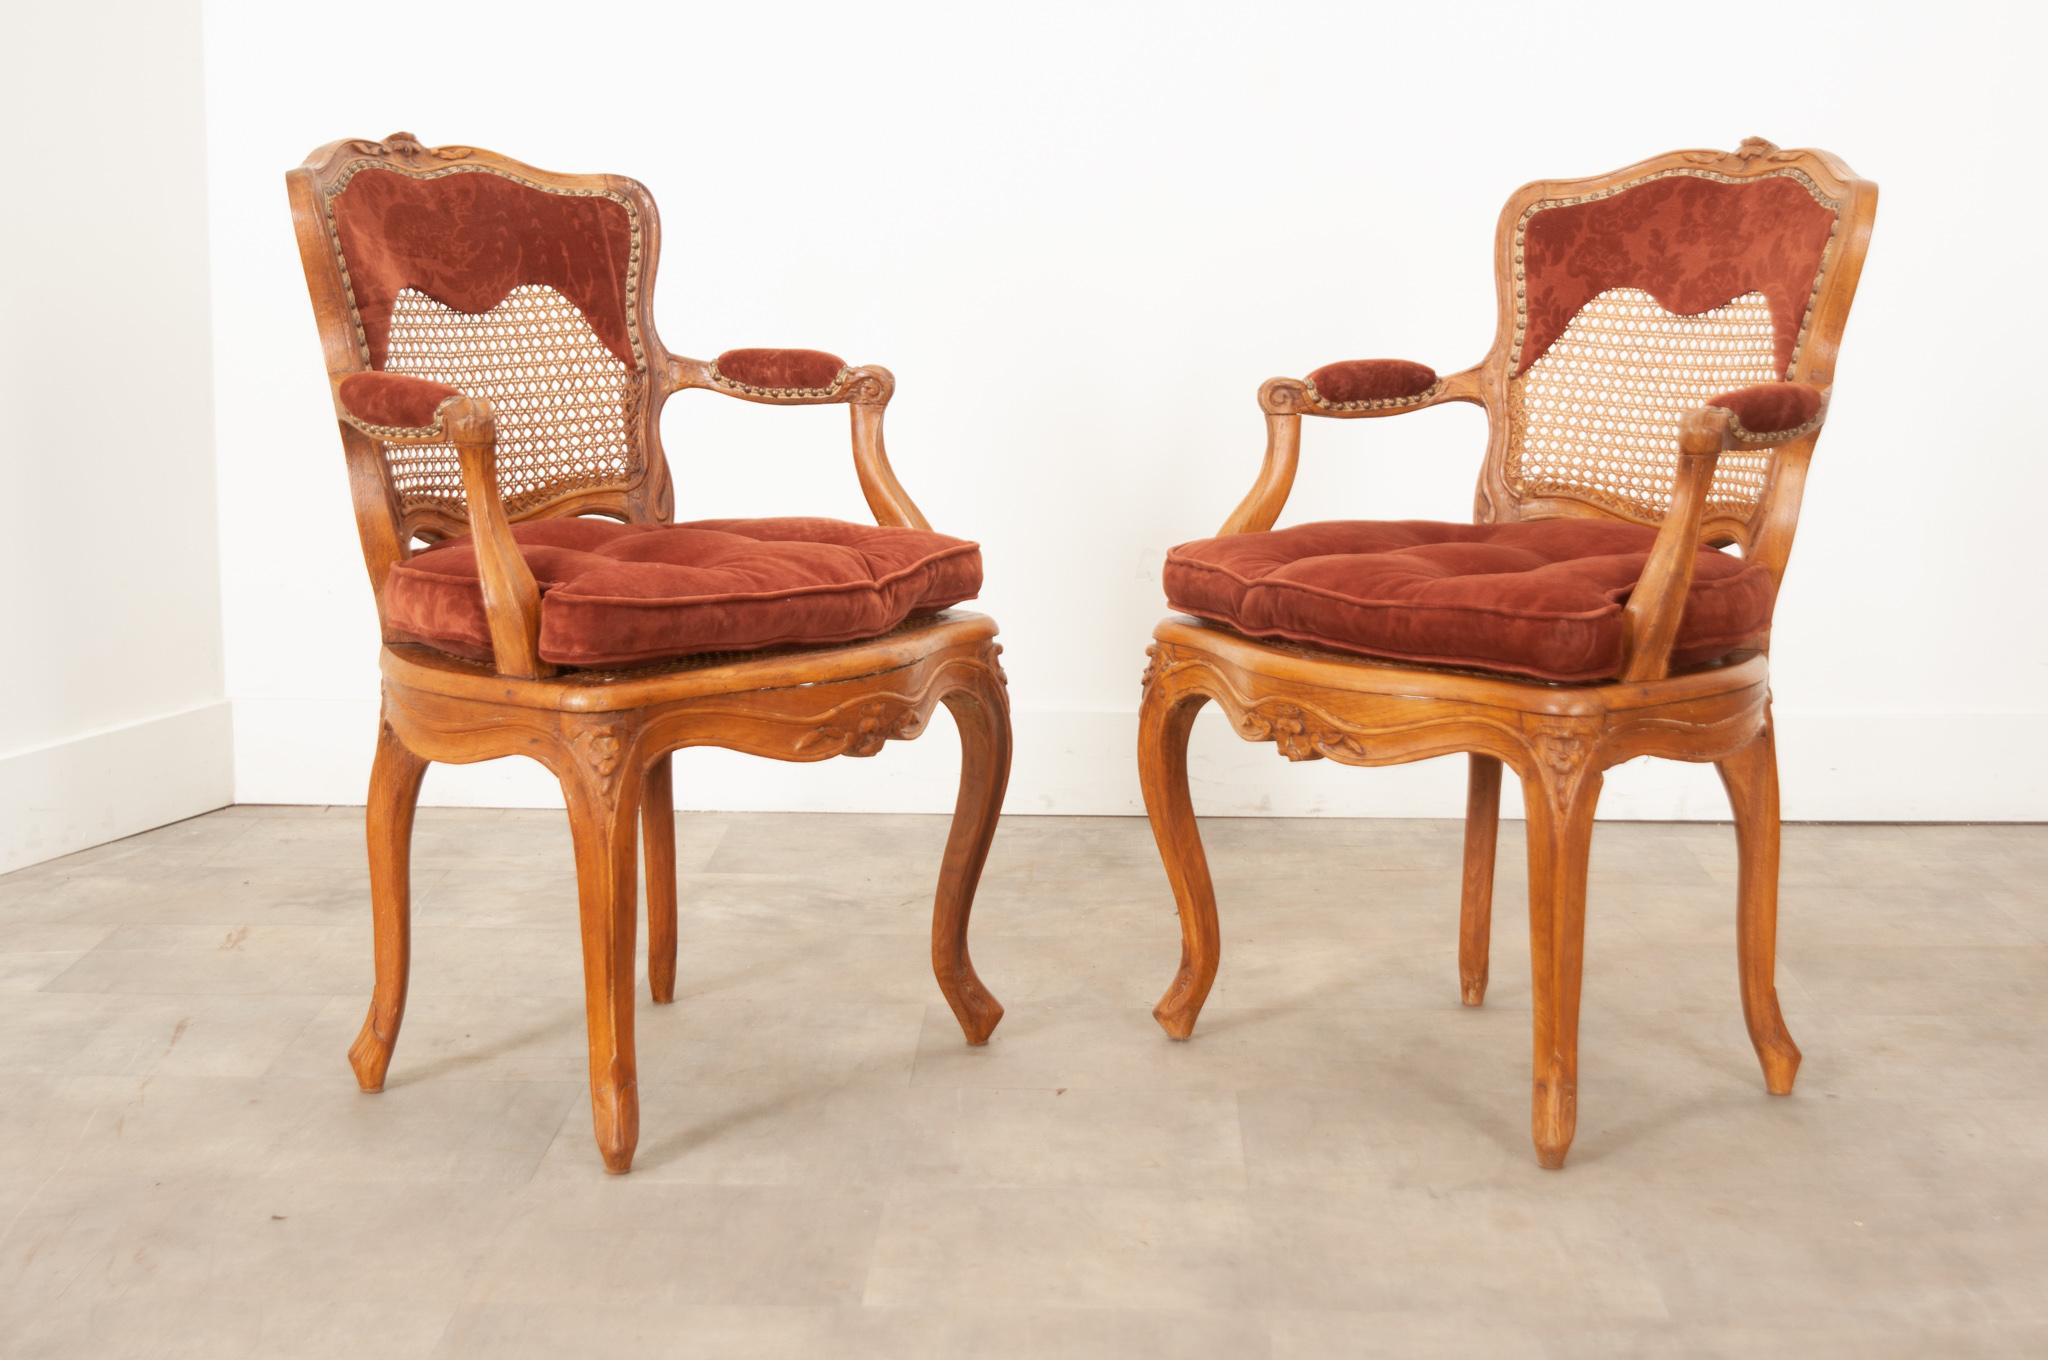 Ein Paar Eichenholzstühle im Stil Louis XV aus dem 18. Jahrhundert. Die Sitzhöhe beträgt 16 ¾